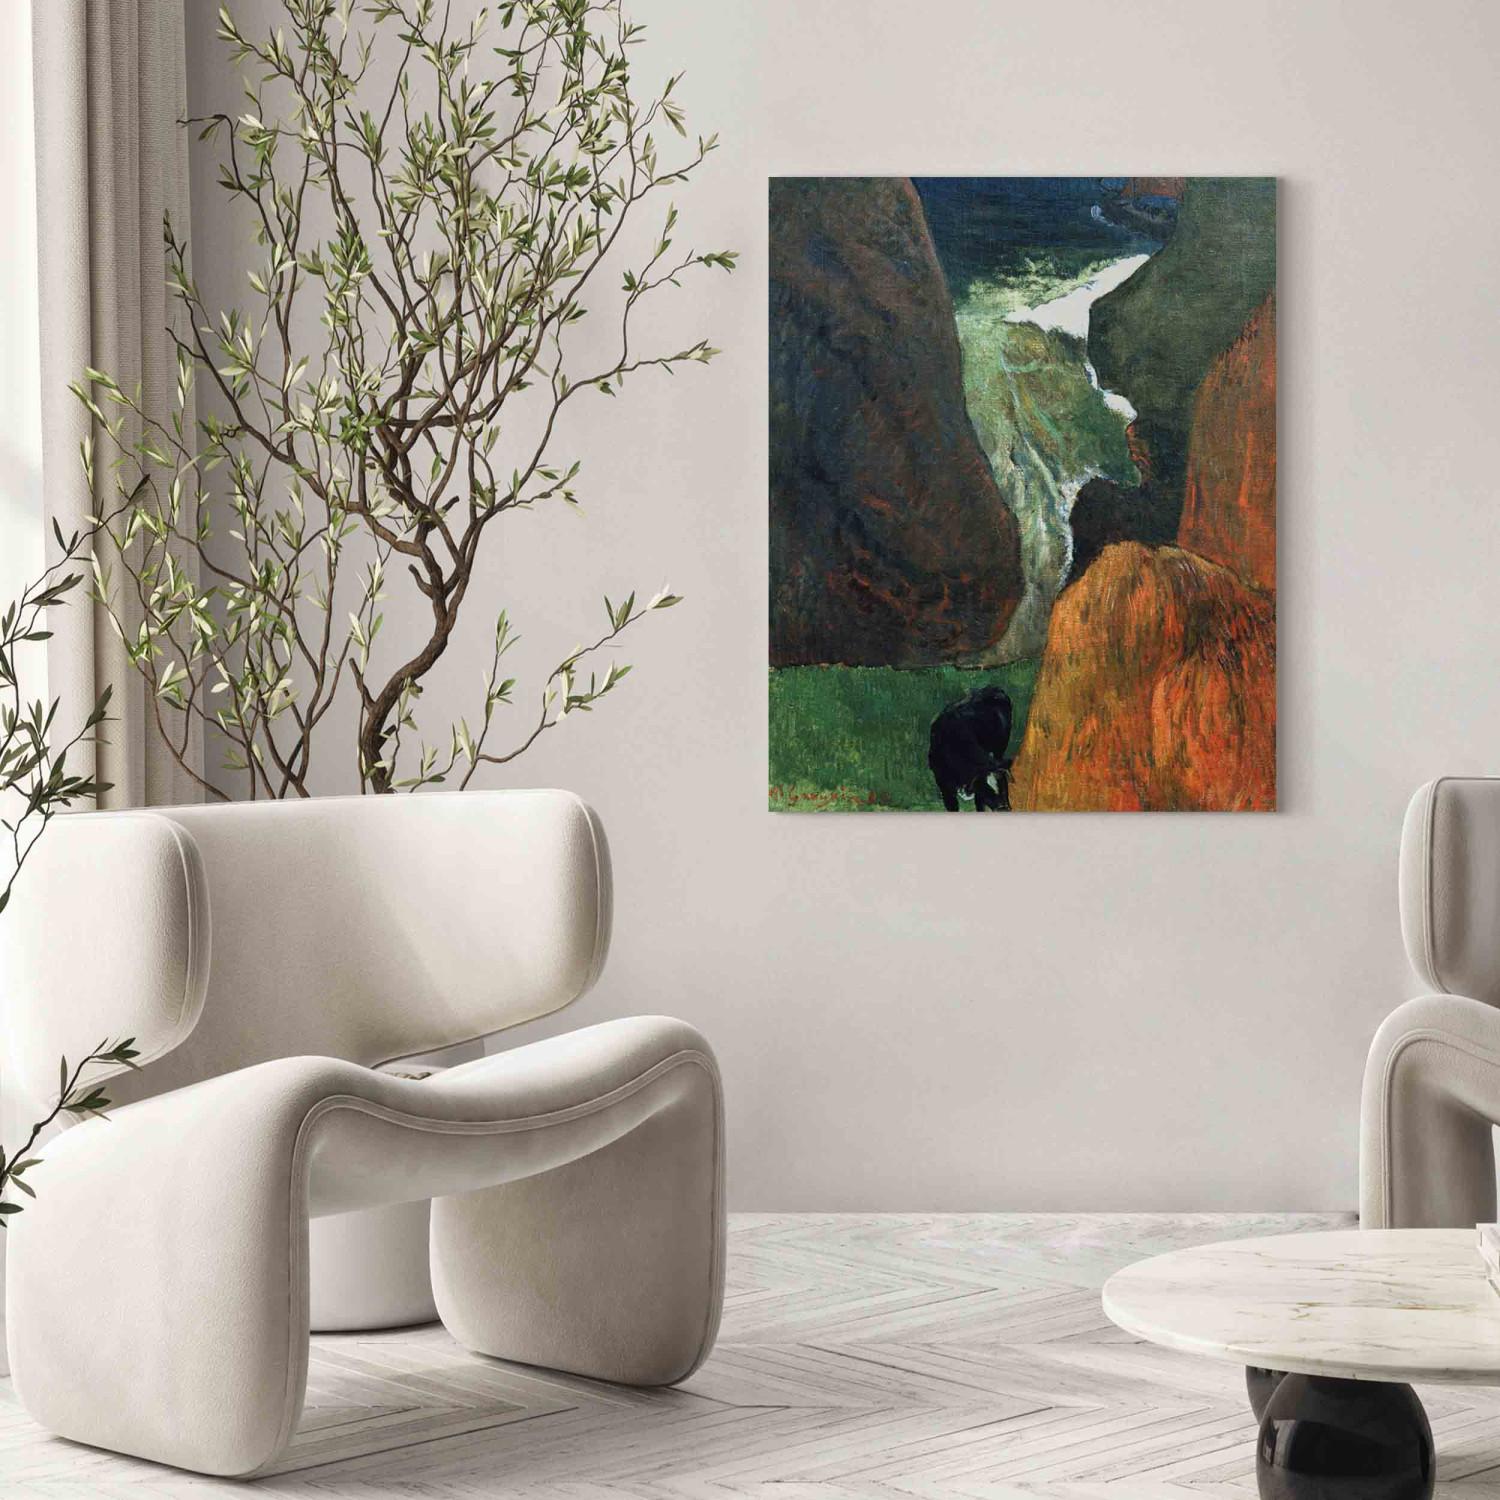 Reproducción de cuadro Landscape with cow between th.cliffs 